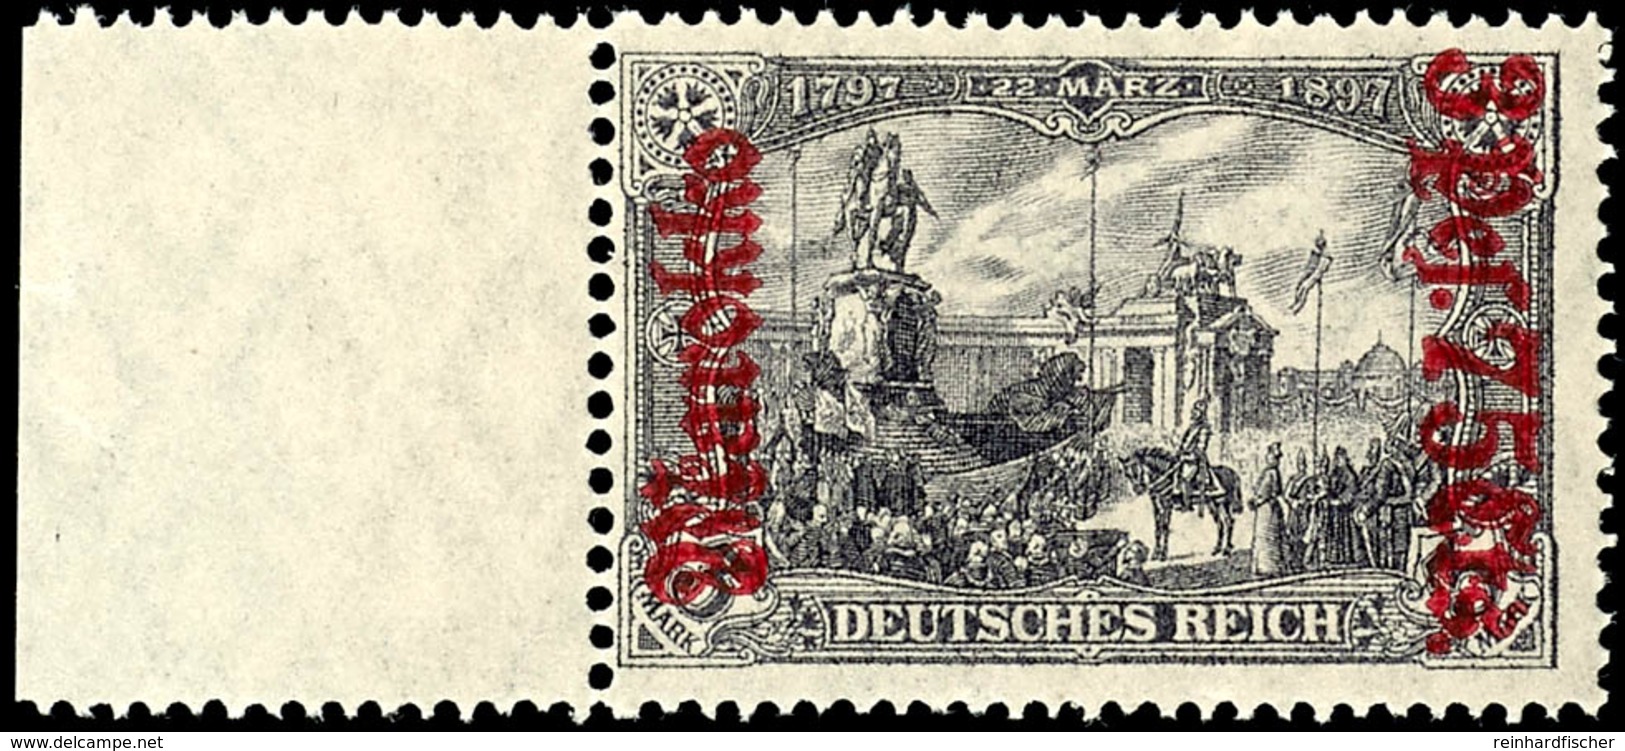 3 Pes. 75 Cts. Auf 3 Mark Deutsches Reich Mit Wasserzeichen, Kriegsdruck, 25 : 17 Zähnungslöcher, Audfruck Dunkellilarot - Deutsche Post In Marokko